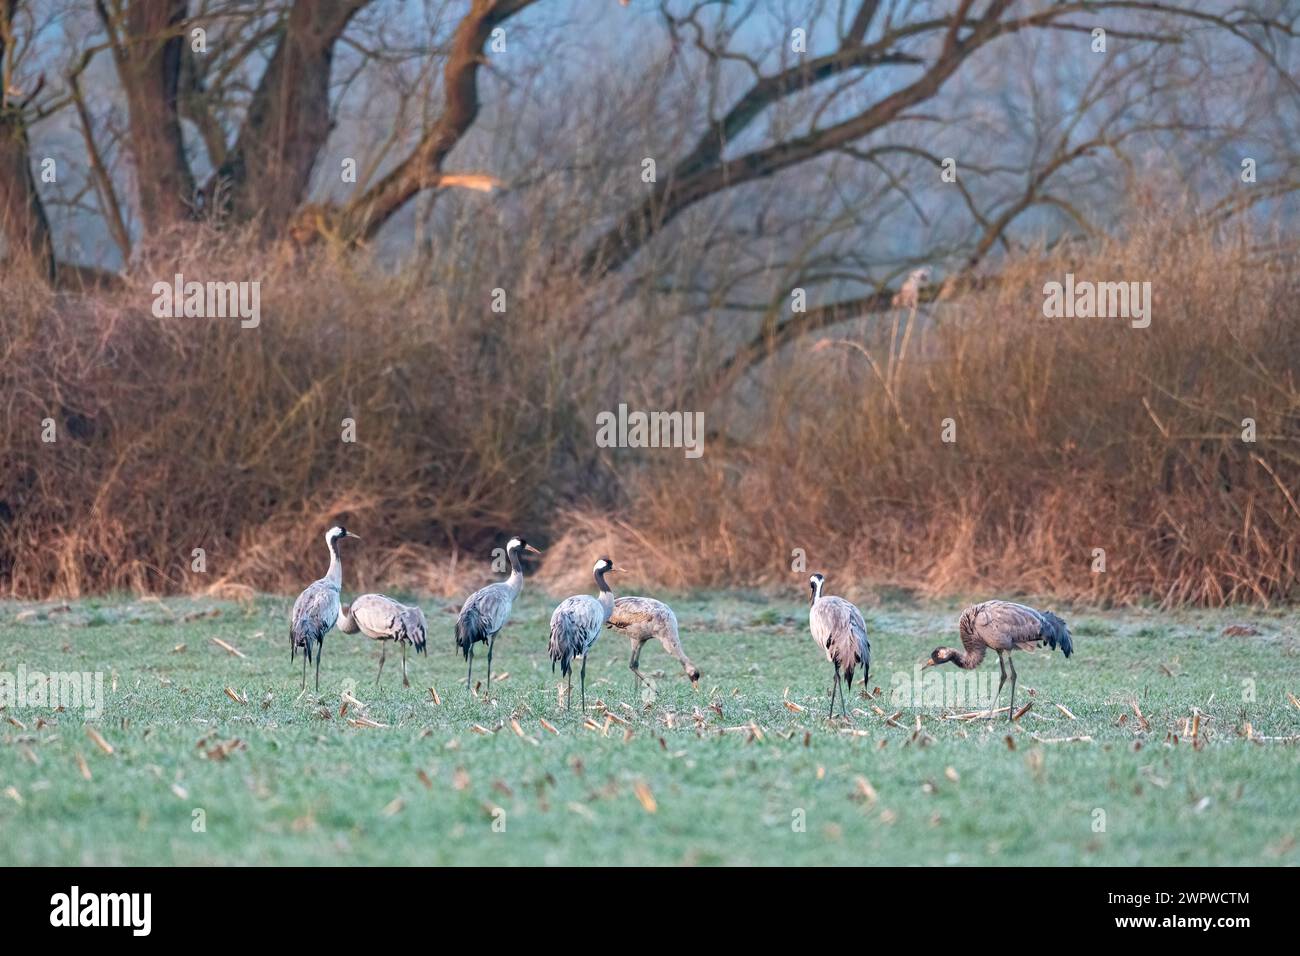 Crane birds in the wild Stock Photo